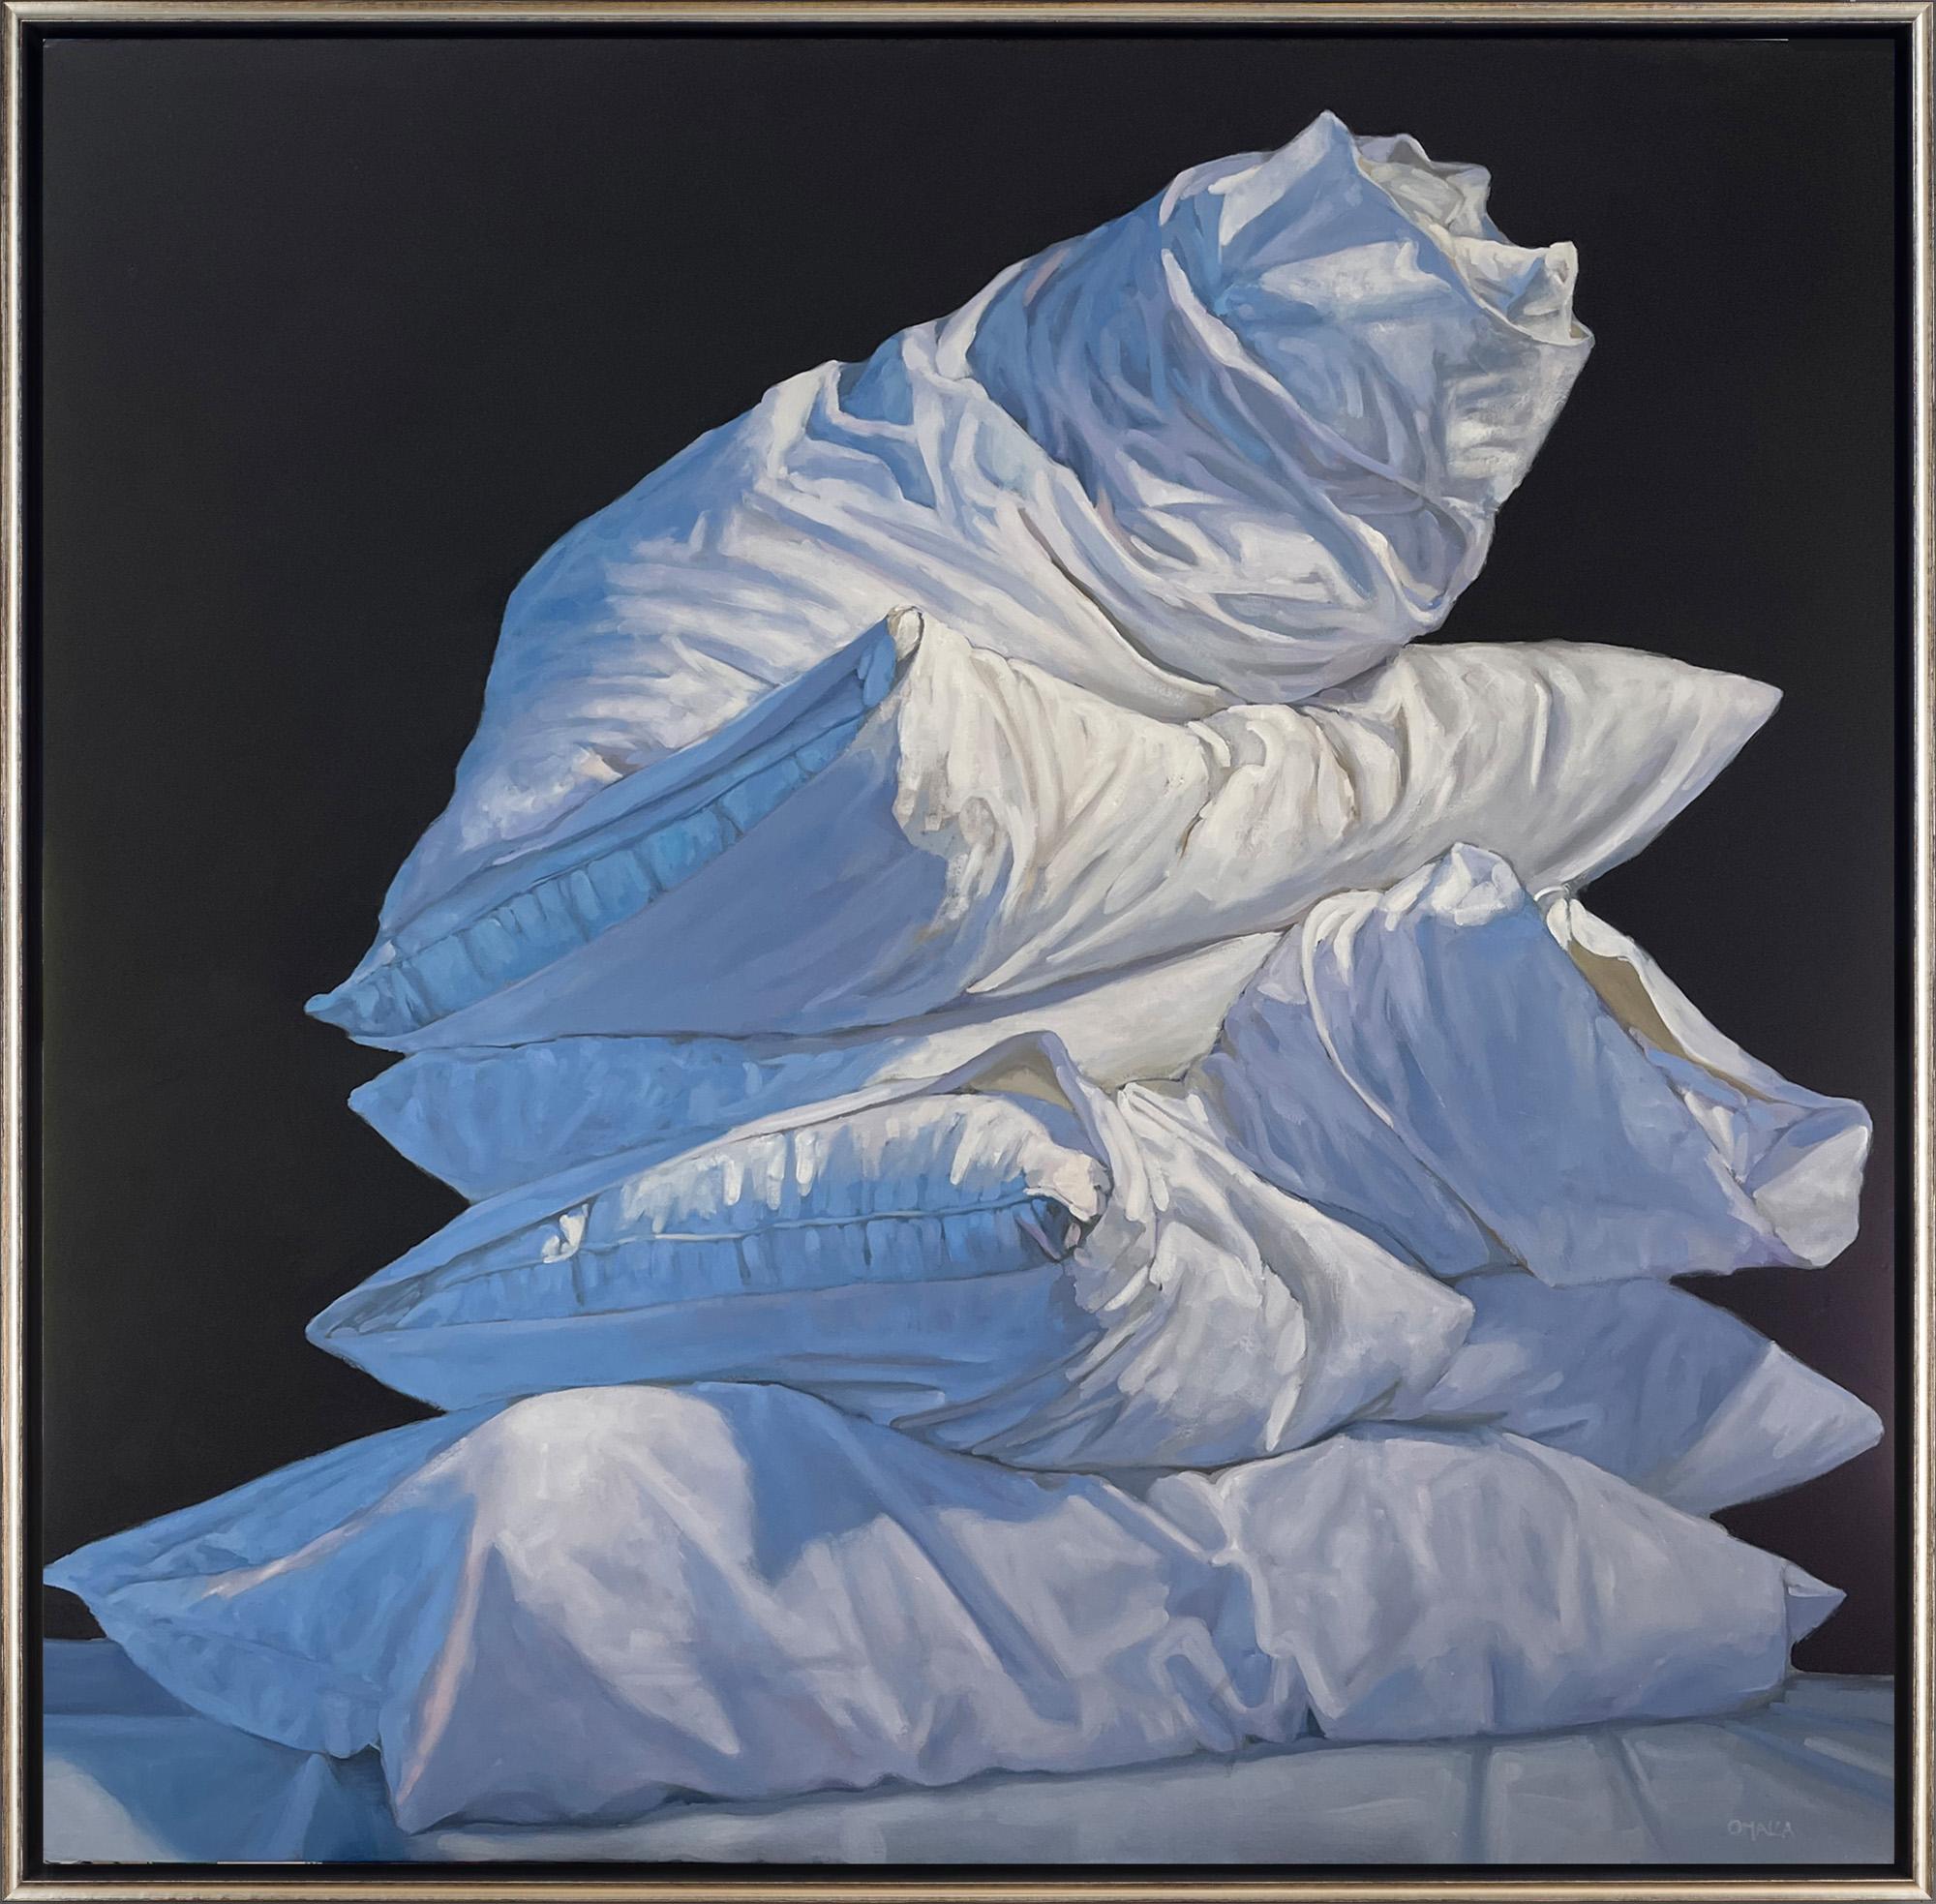 Still-Life Painting Carol O'Malia - "Achievement" Nature morte contemporaine d'oreillers, peinture à l'huile sur toile encadrée